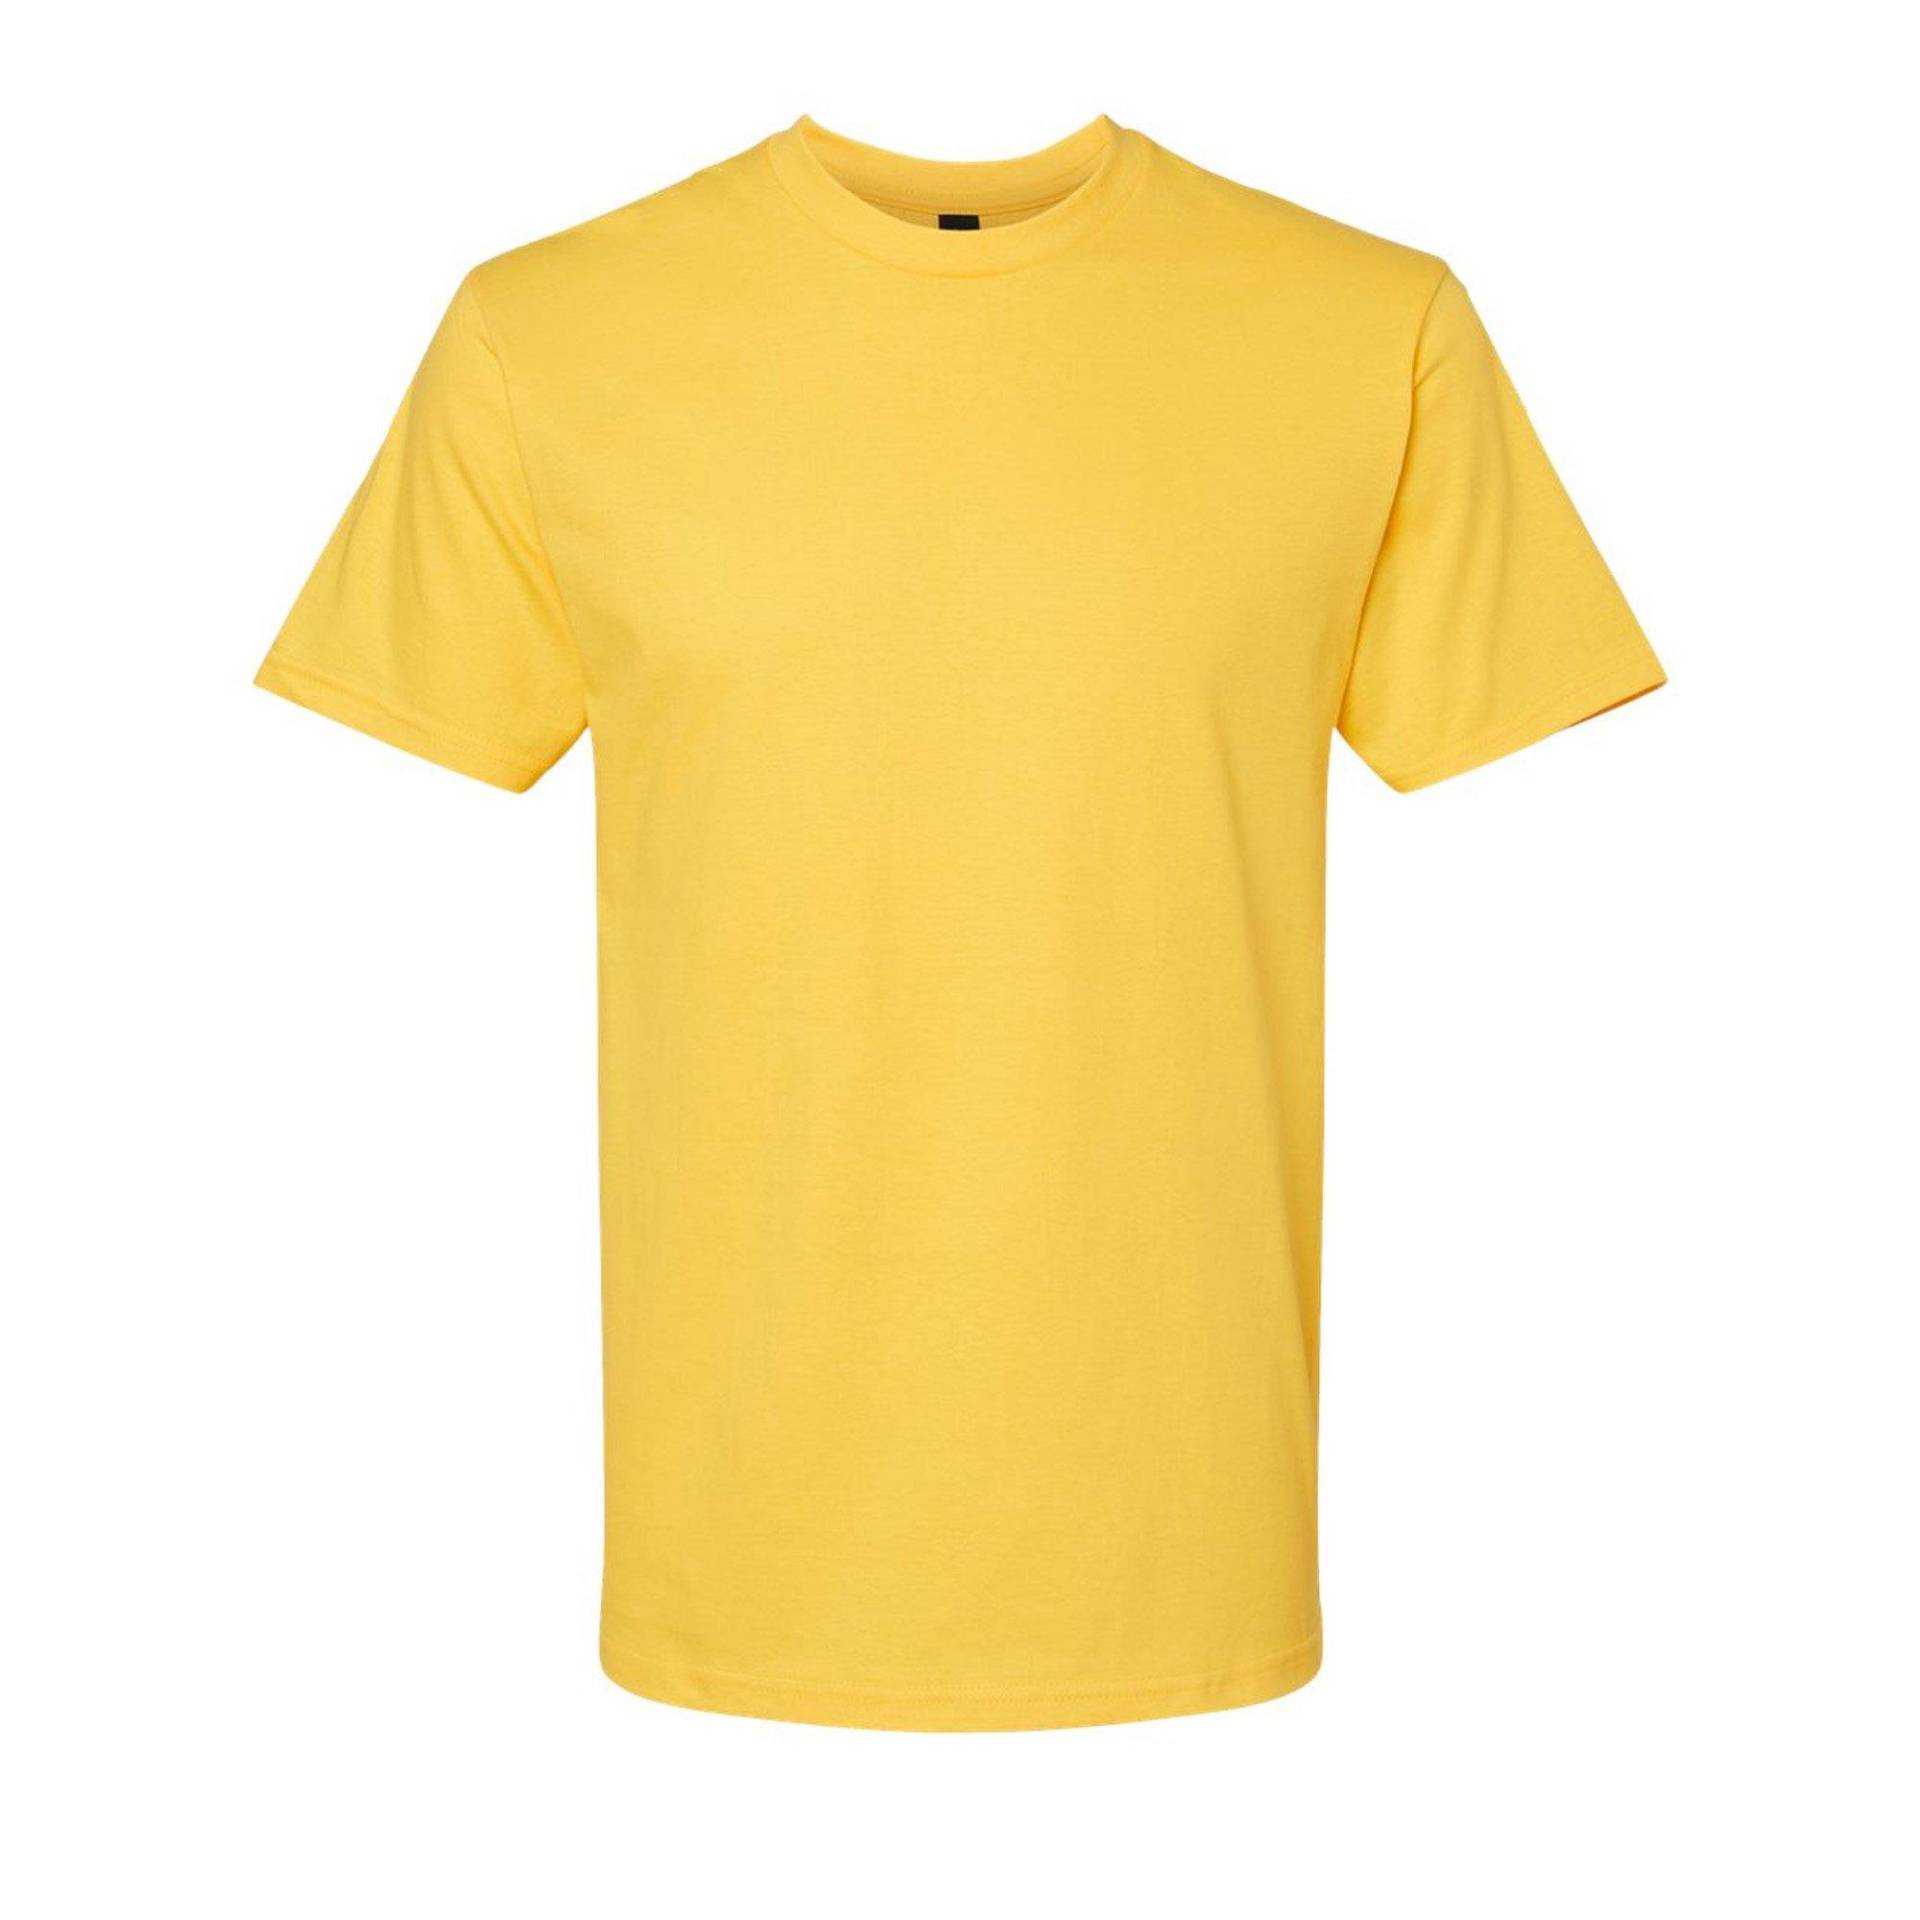 Softstyle Tshirt Damen Gelb Bunt S von Gildan